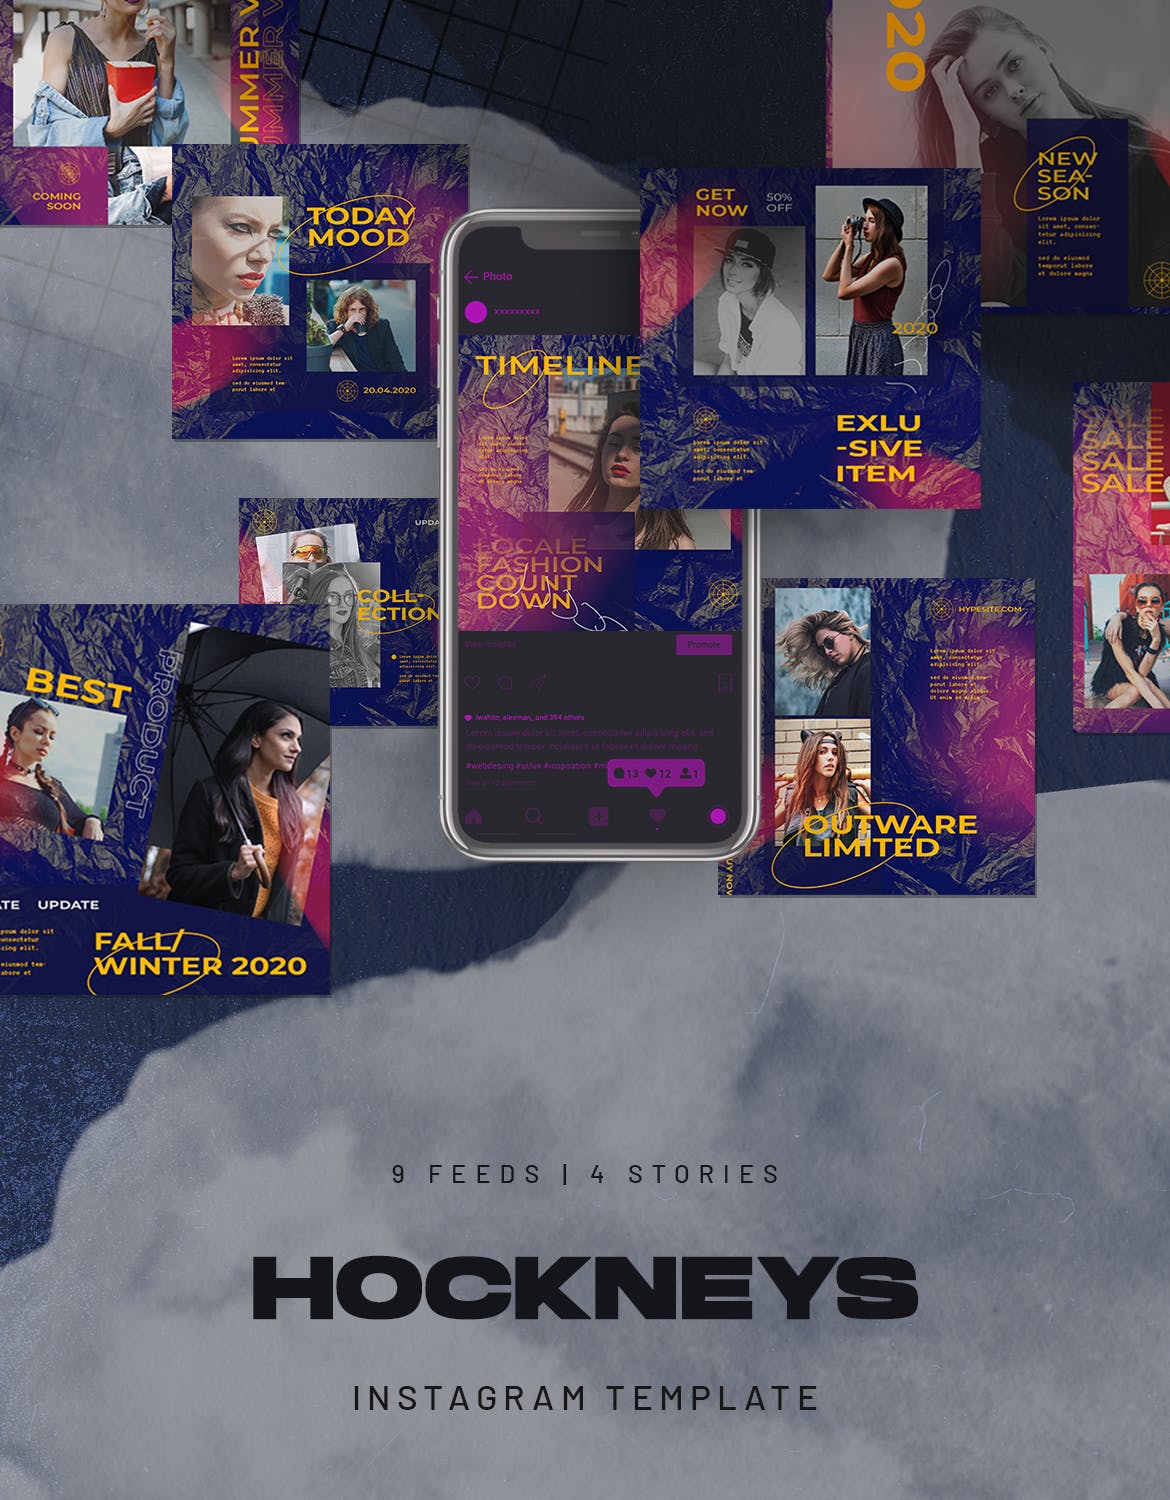 时尚 都市 风格 女性 主题Instagram故事社交素材 Hockneys Instagram Stories Urban Fashion Style设计素材模板